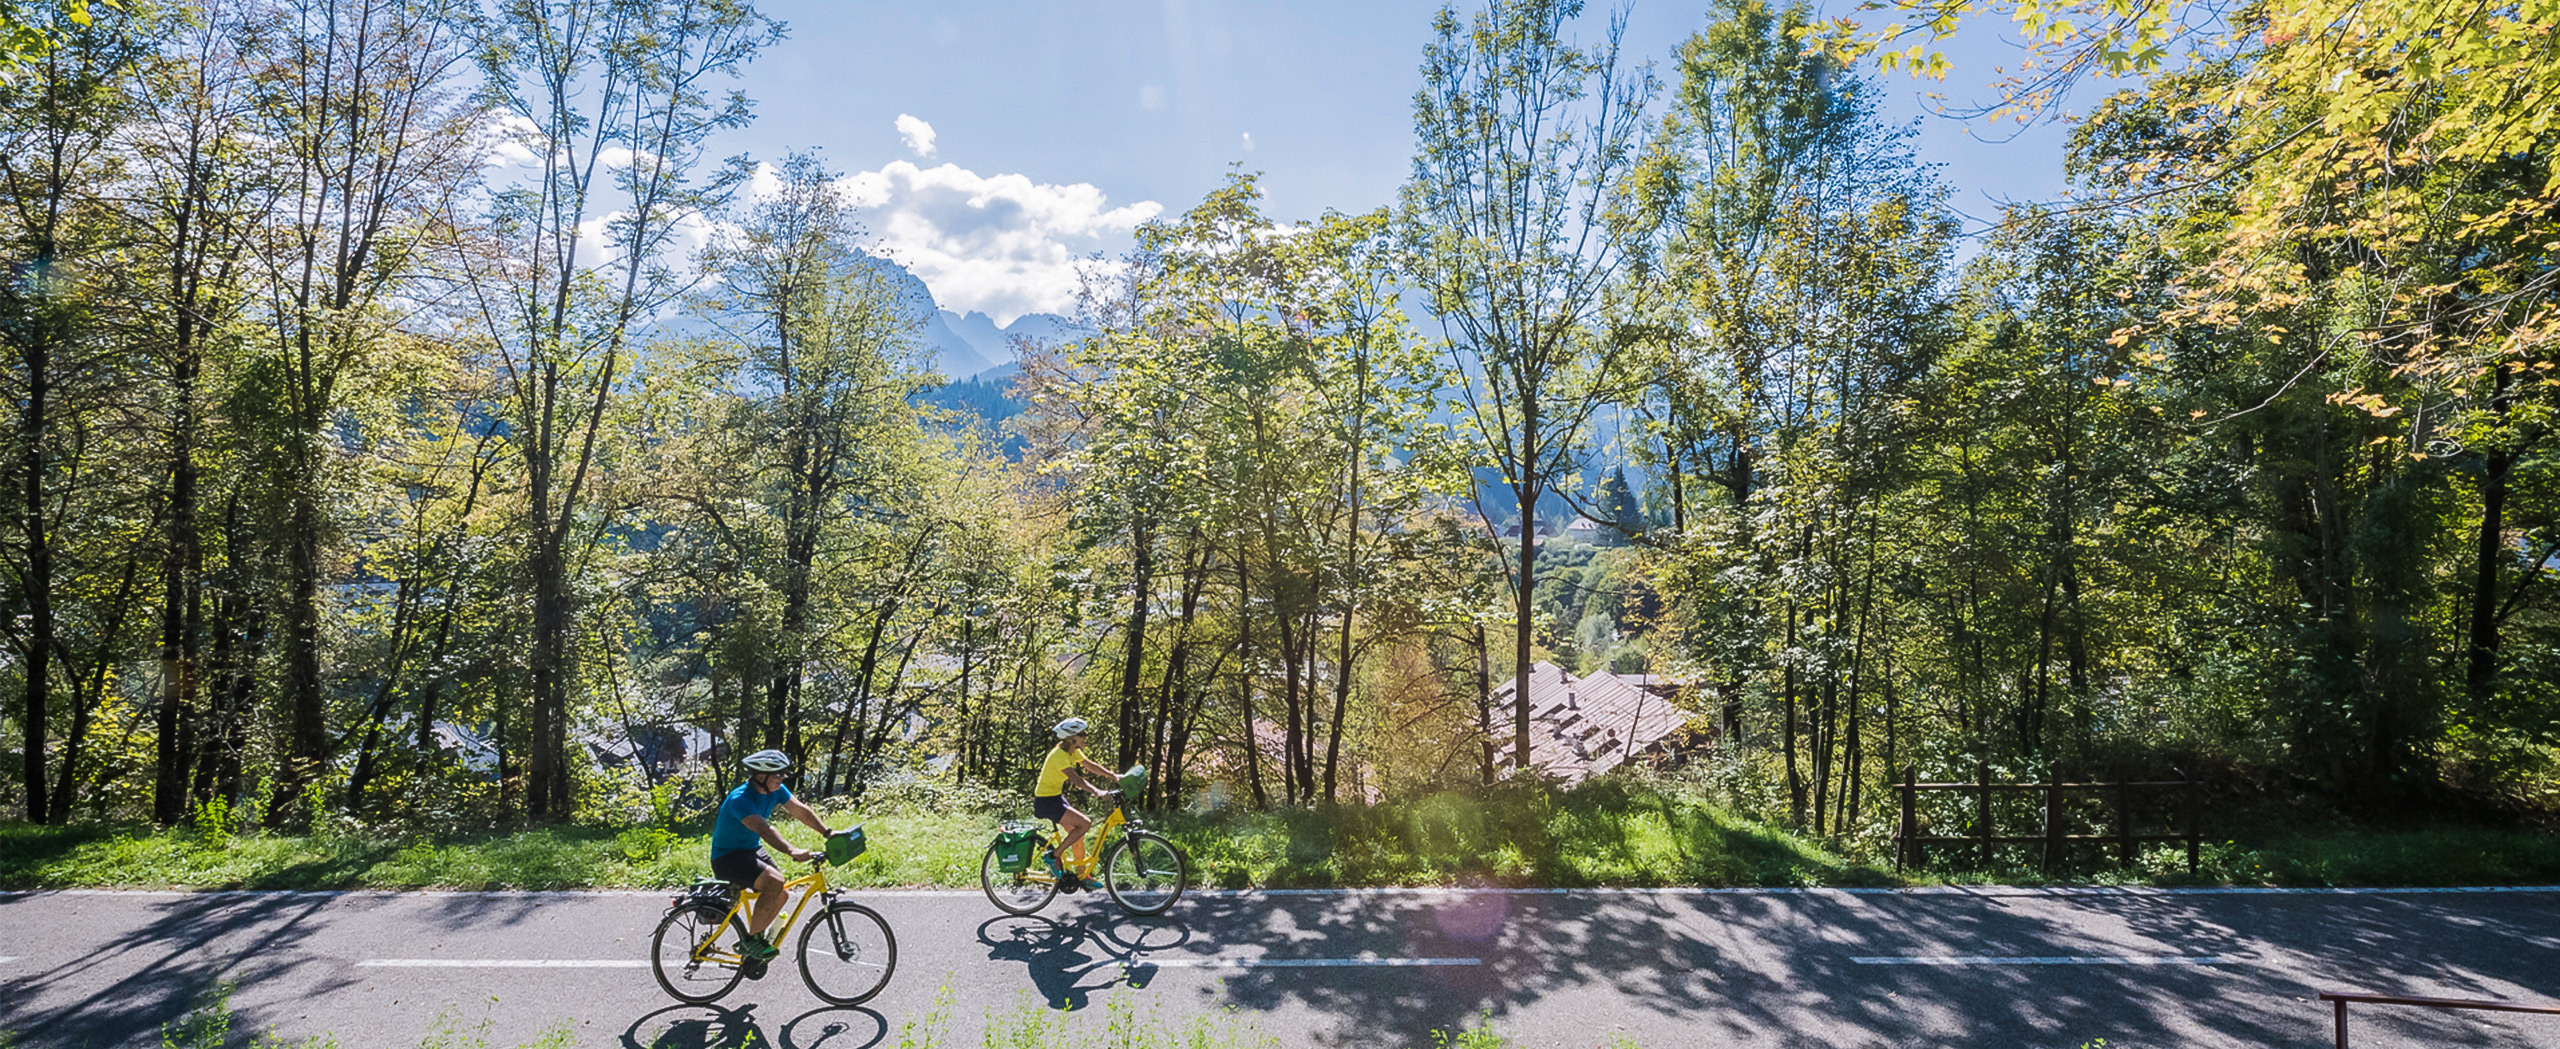 Salzburg to Grado by Bike in 10 Days